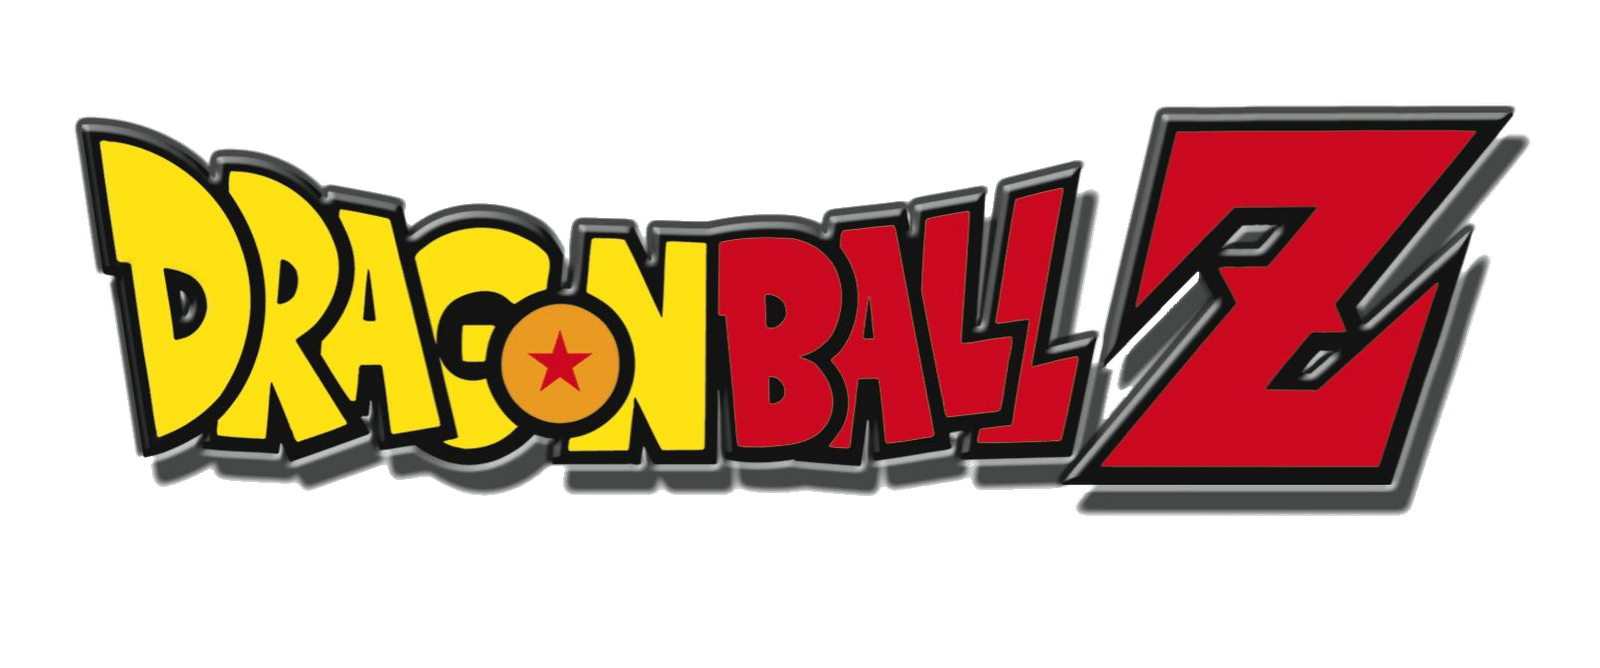 Dragon+Ball+Z+logo.gif